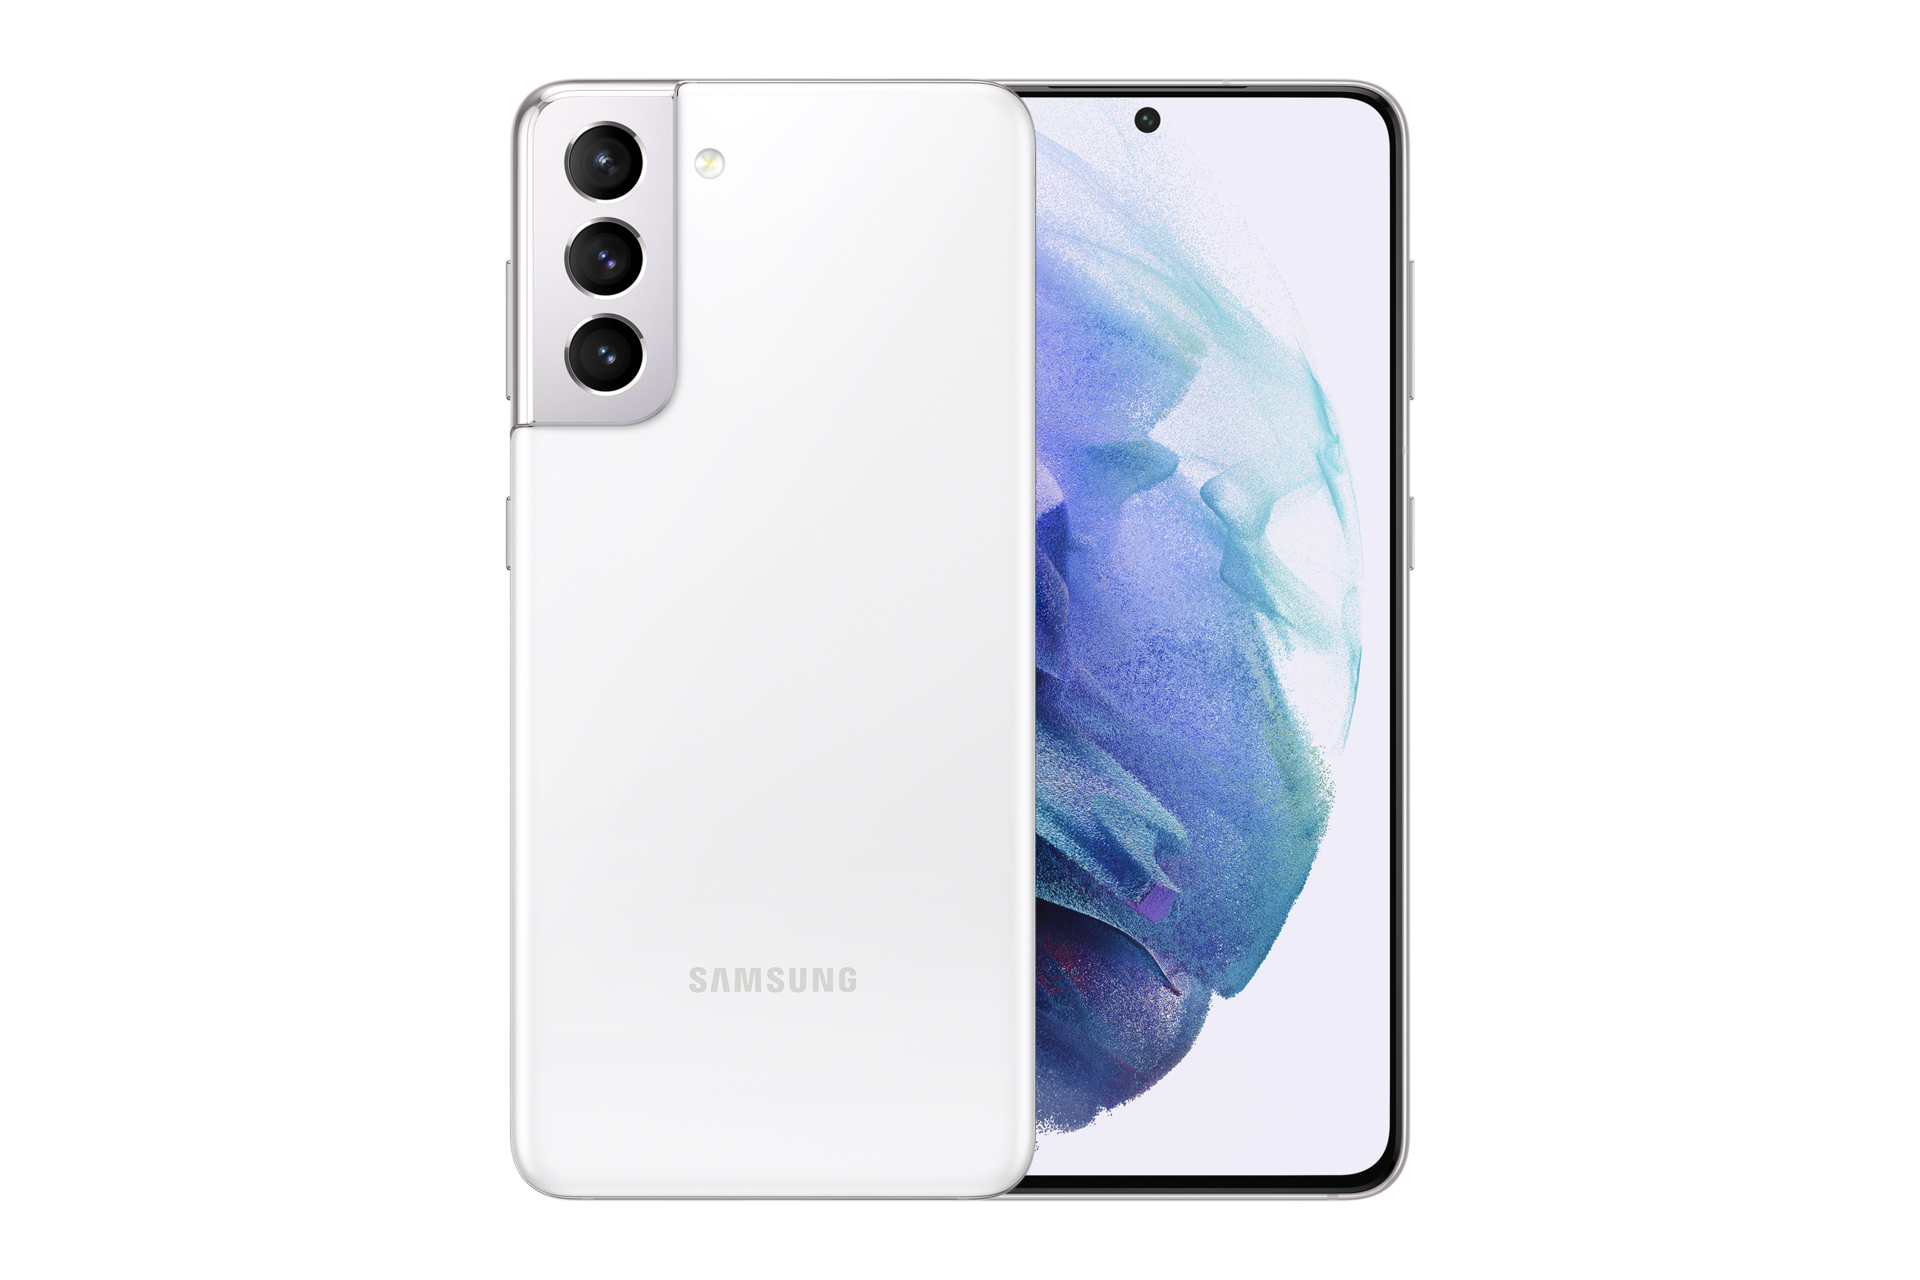 Смартфон Samsung Galaxy s21 8/256gb, SM-g991, белый Фантом. Samsung s21 белый Фантом. Samsung s21 белый. Samsung Galaxy s21 белый Фантом. Samsung s21 5g 256gb